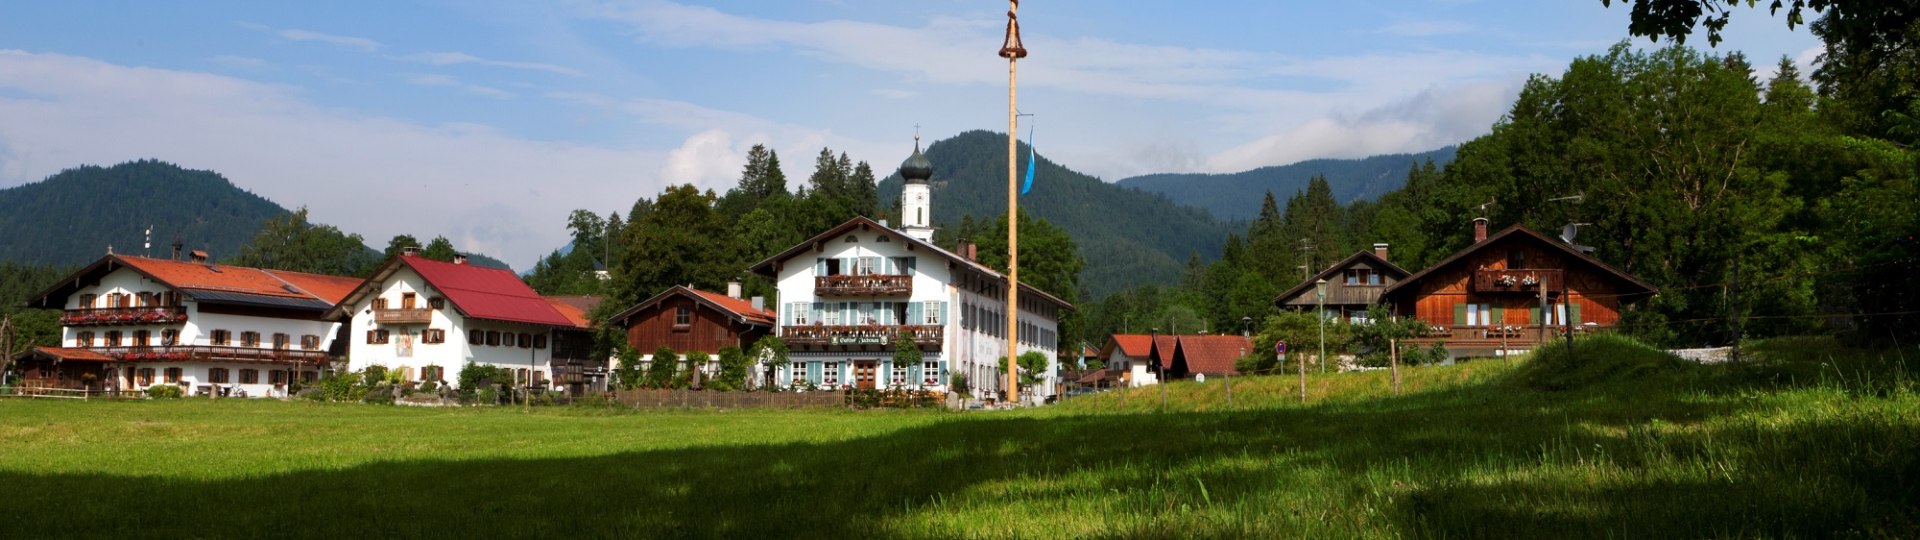 Jachenau Dorf, © Gemeinde Jachenau